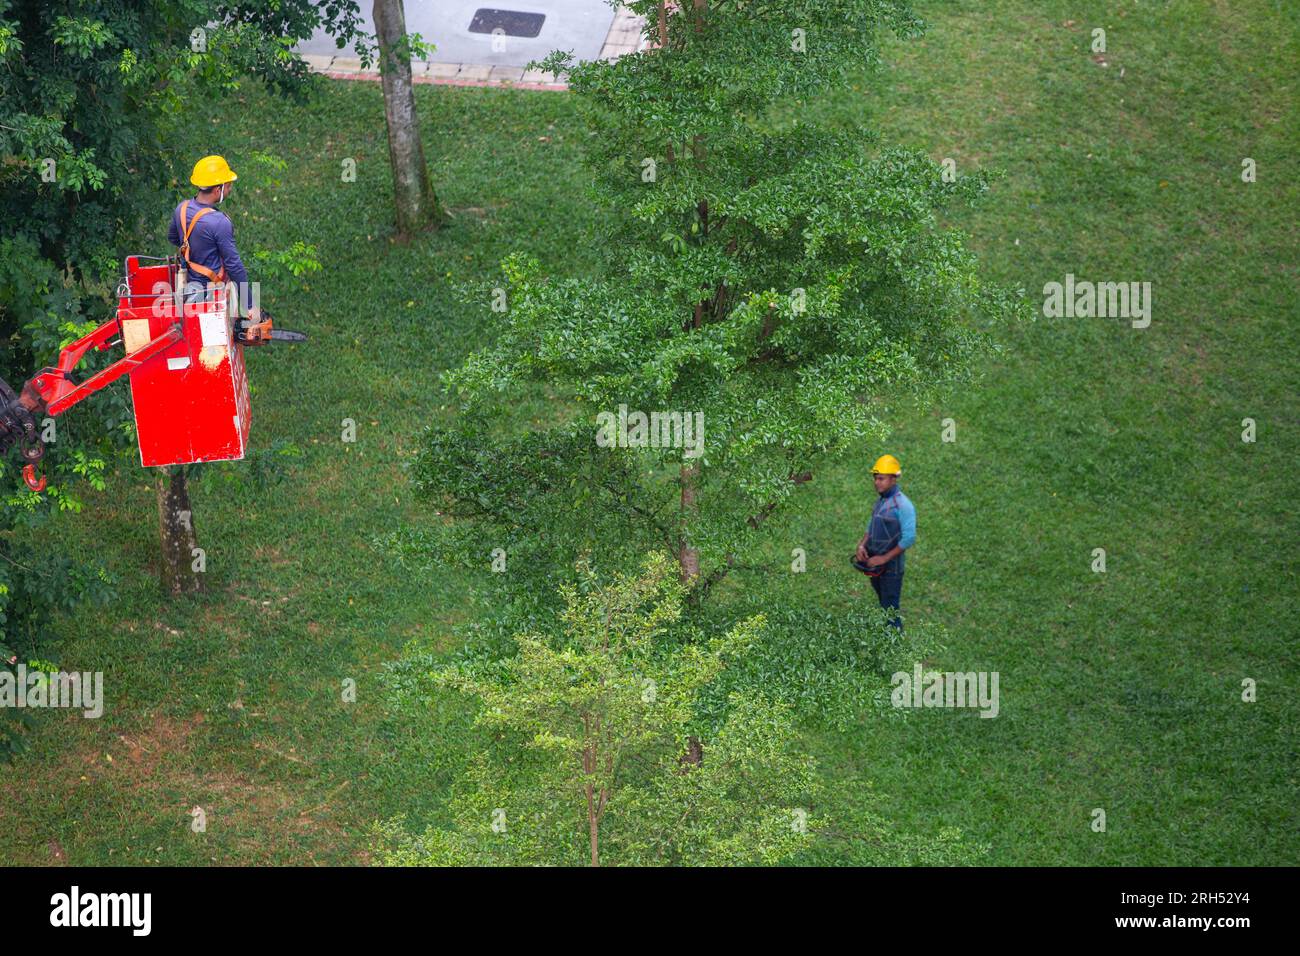 Un jardinier qualifié est soulevé sur la grue pour couper les branches des arbres, un opérateur sur le sol utilisant un contrôleur sans fil pour déplacer la grue. Banque D'Images